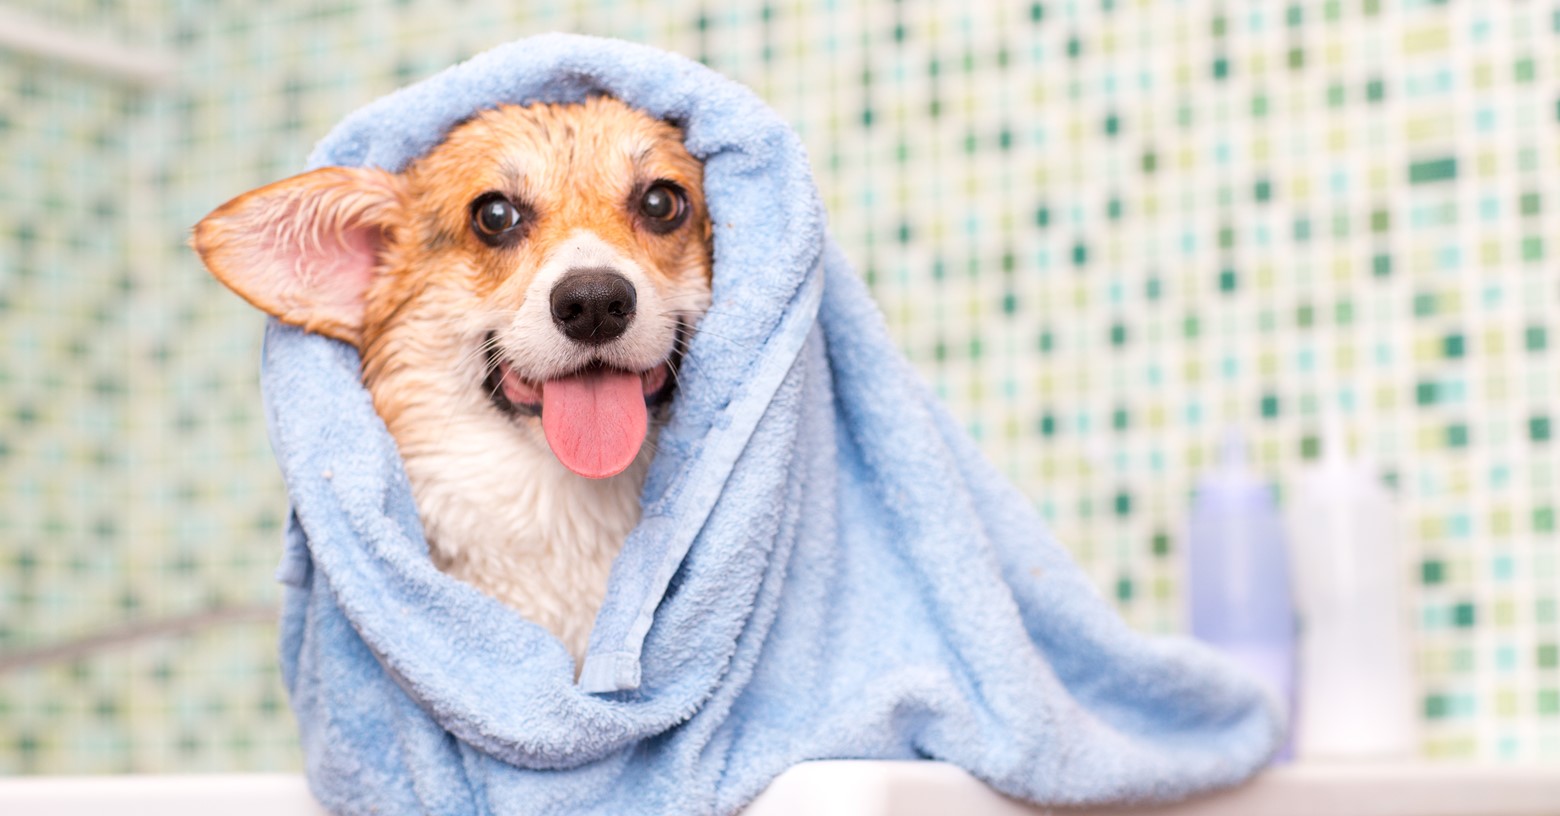 Ask Dr. Jenn: Do I really need to bathe my dog? If so, how often?